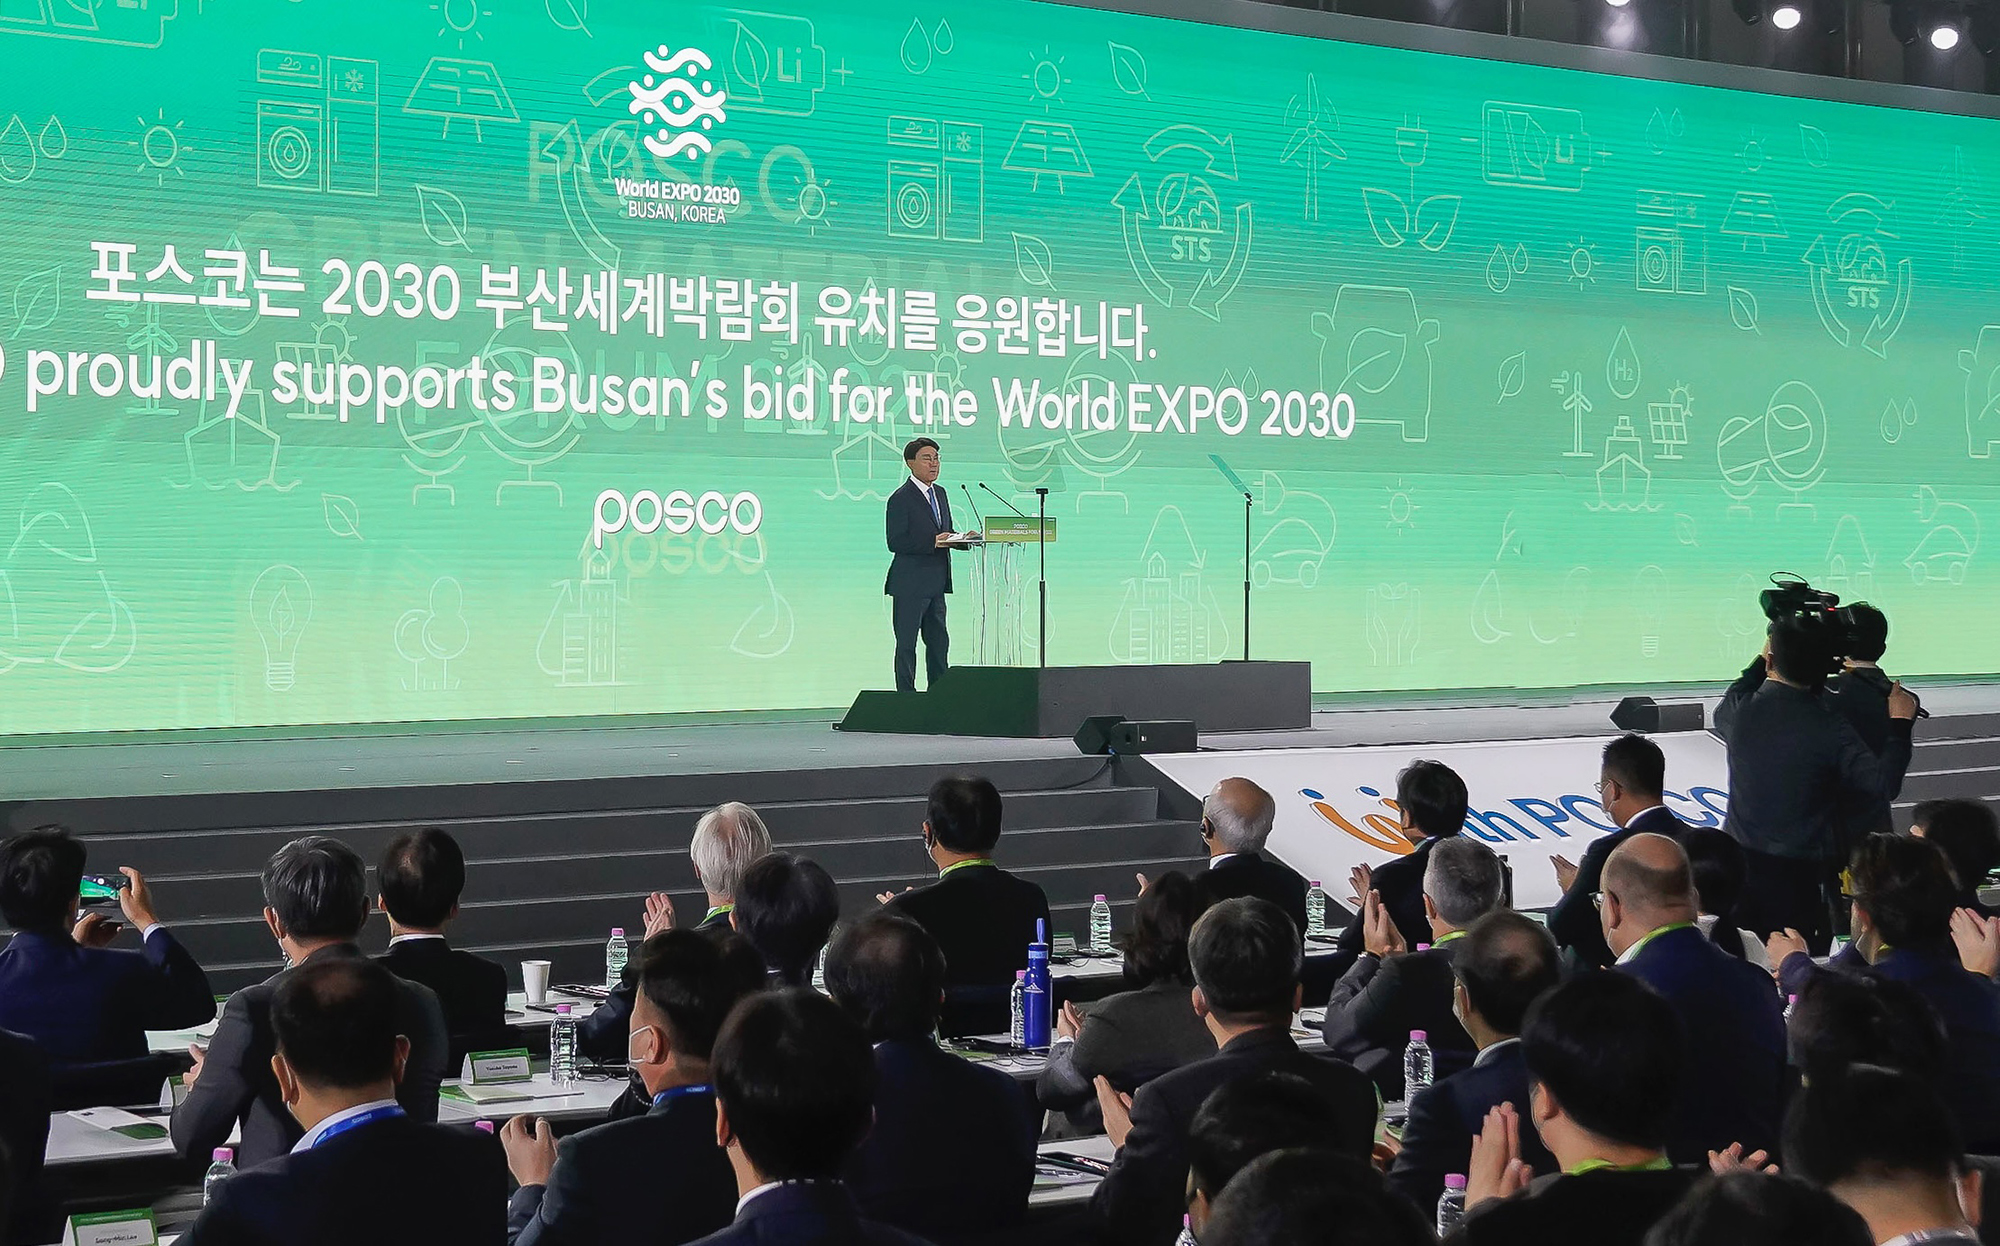 포스코가 1일 송도 컨벤시아에서 '친환경소재포럼 2022'를 개최했다. 포스코그룹 최정우 회장이 기조연설을 하고 있다. 포스코는 부산엑스포 유치 의지를 알려 많은 관심을 이끌어내고자 단상 위에서 연설을 하고 있다.